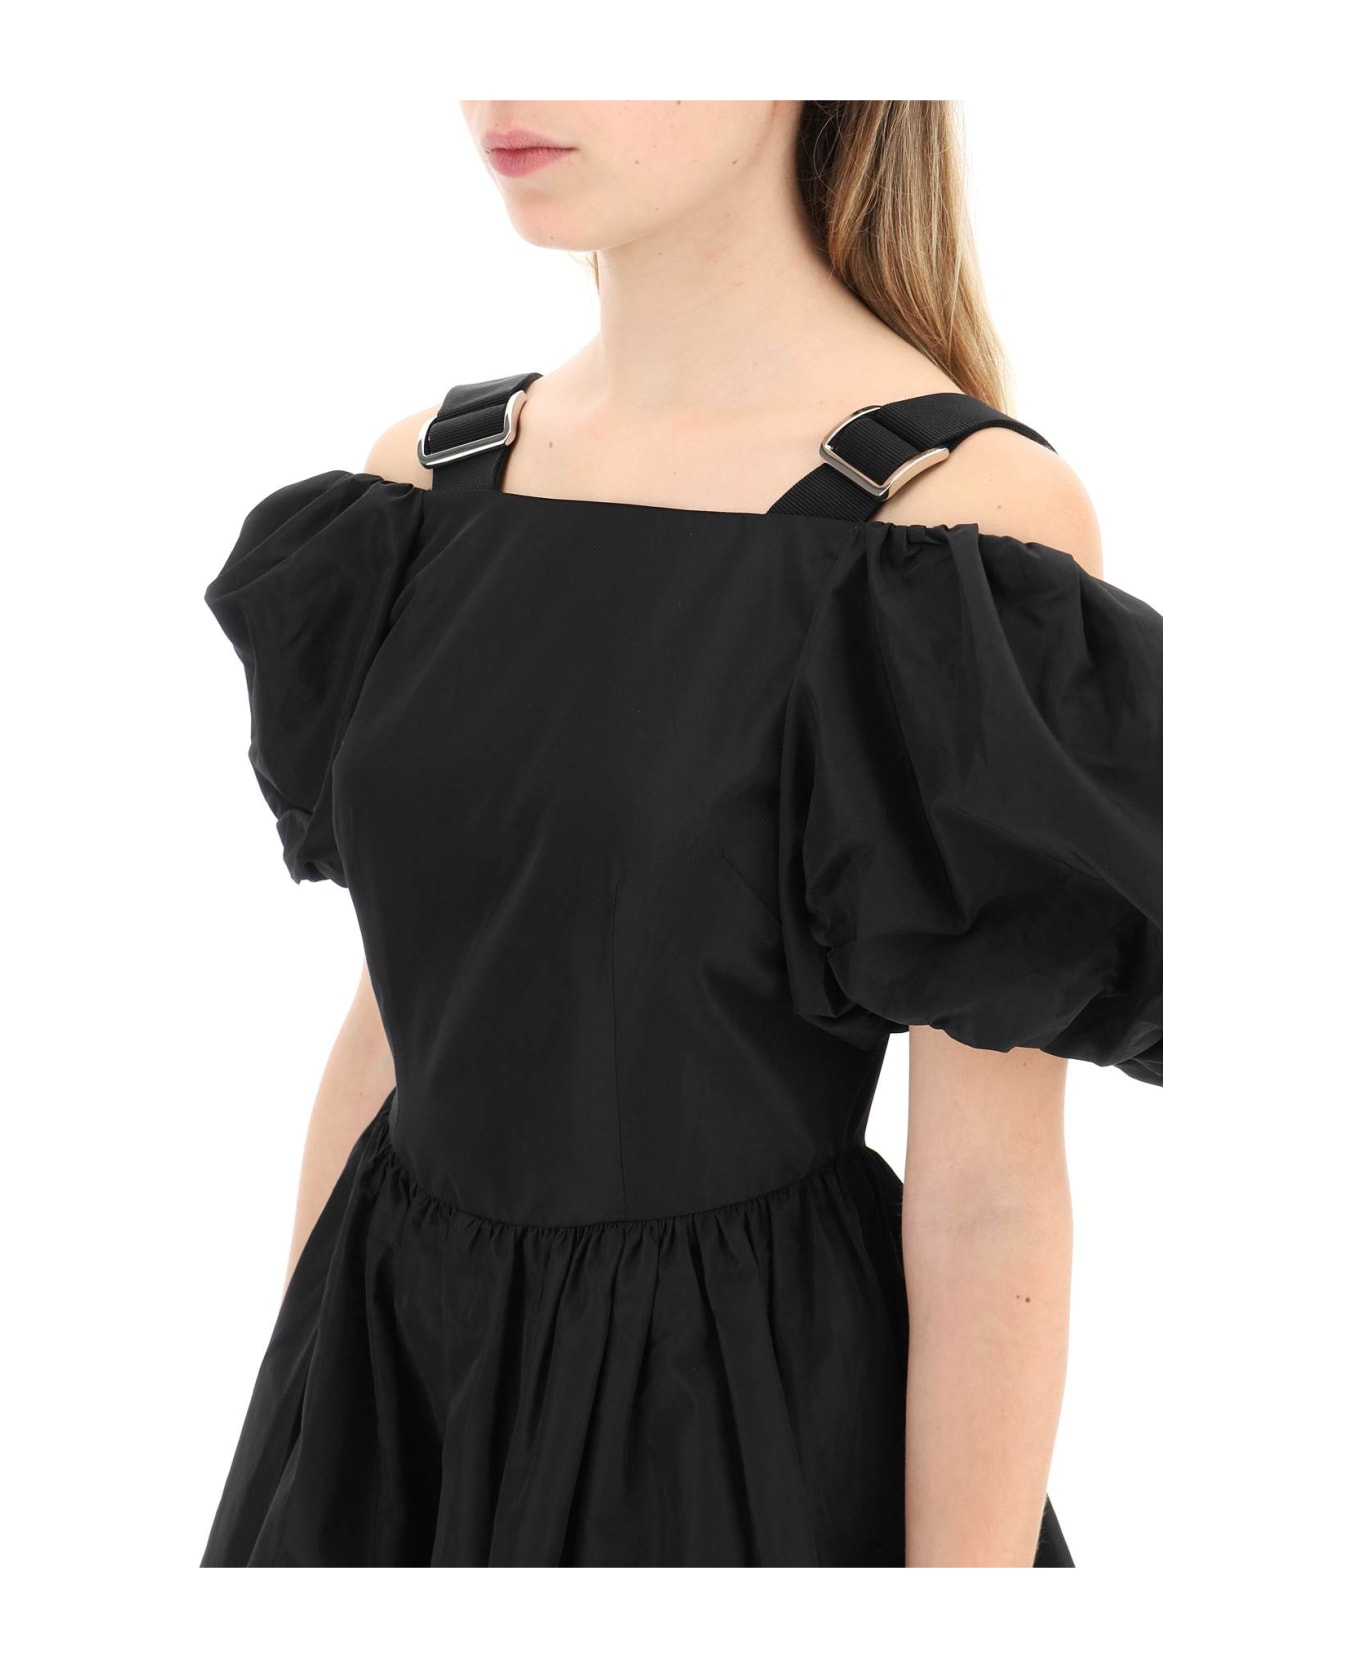 Simone Rocha Off-the-shoulder Taffeta Mini Dress With Slider Straps - BLACK (Black)